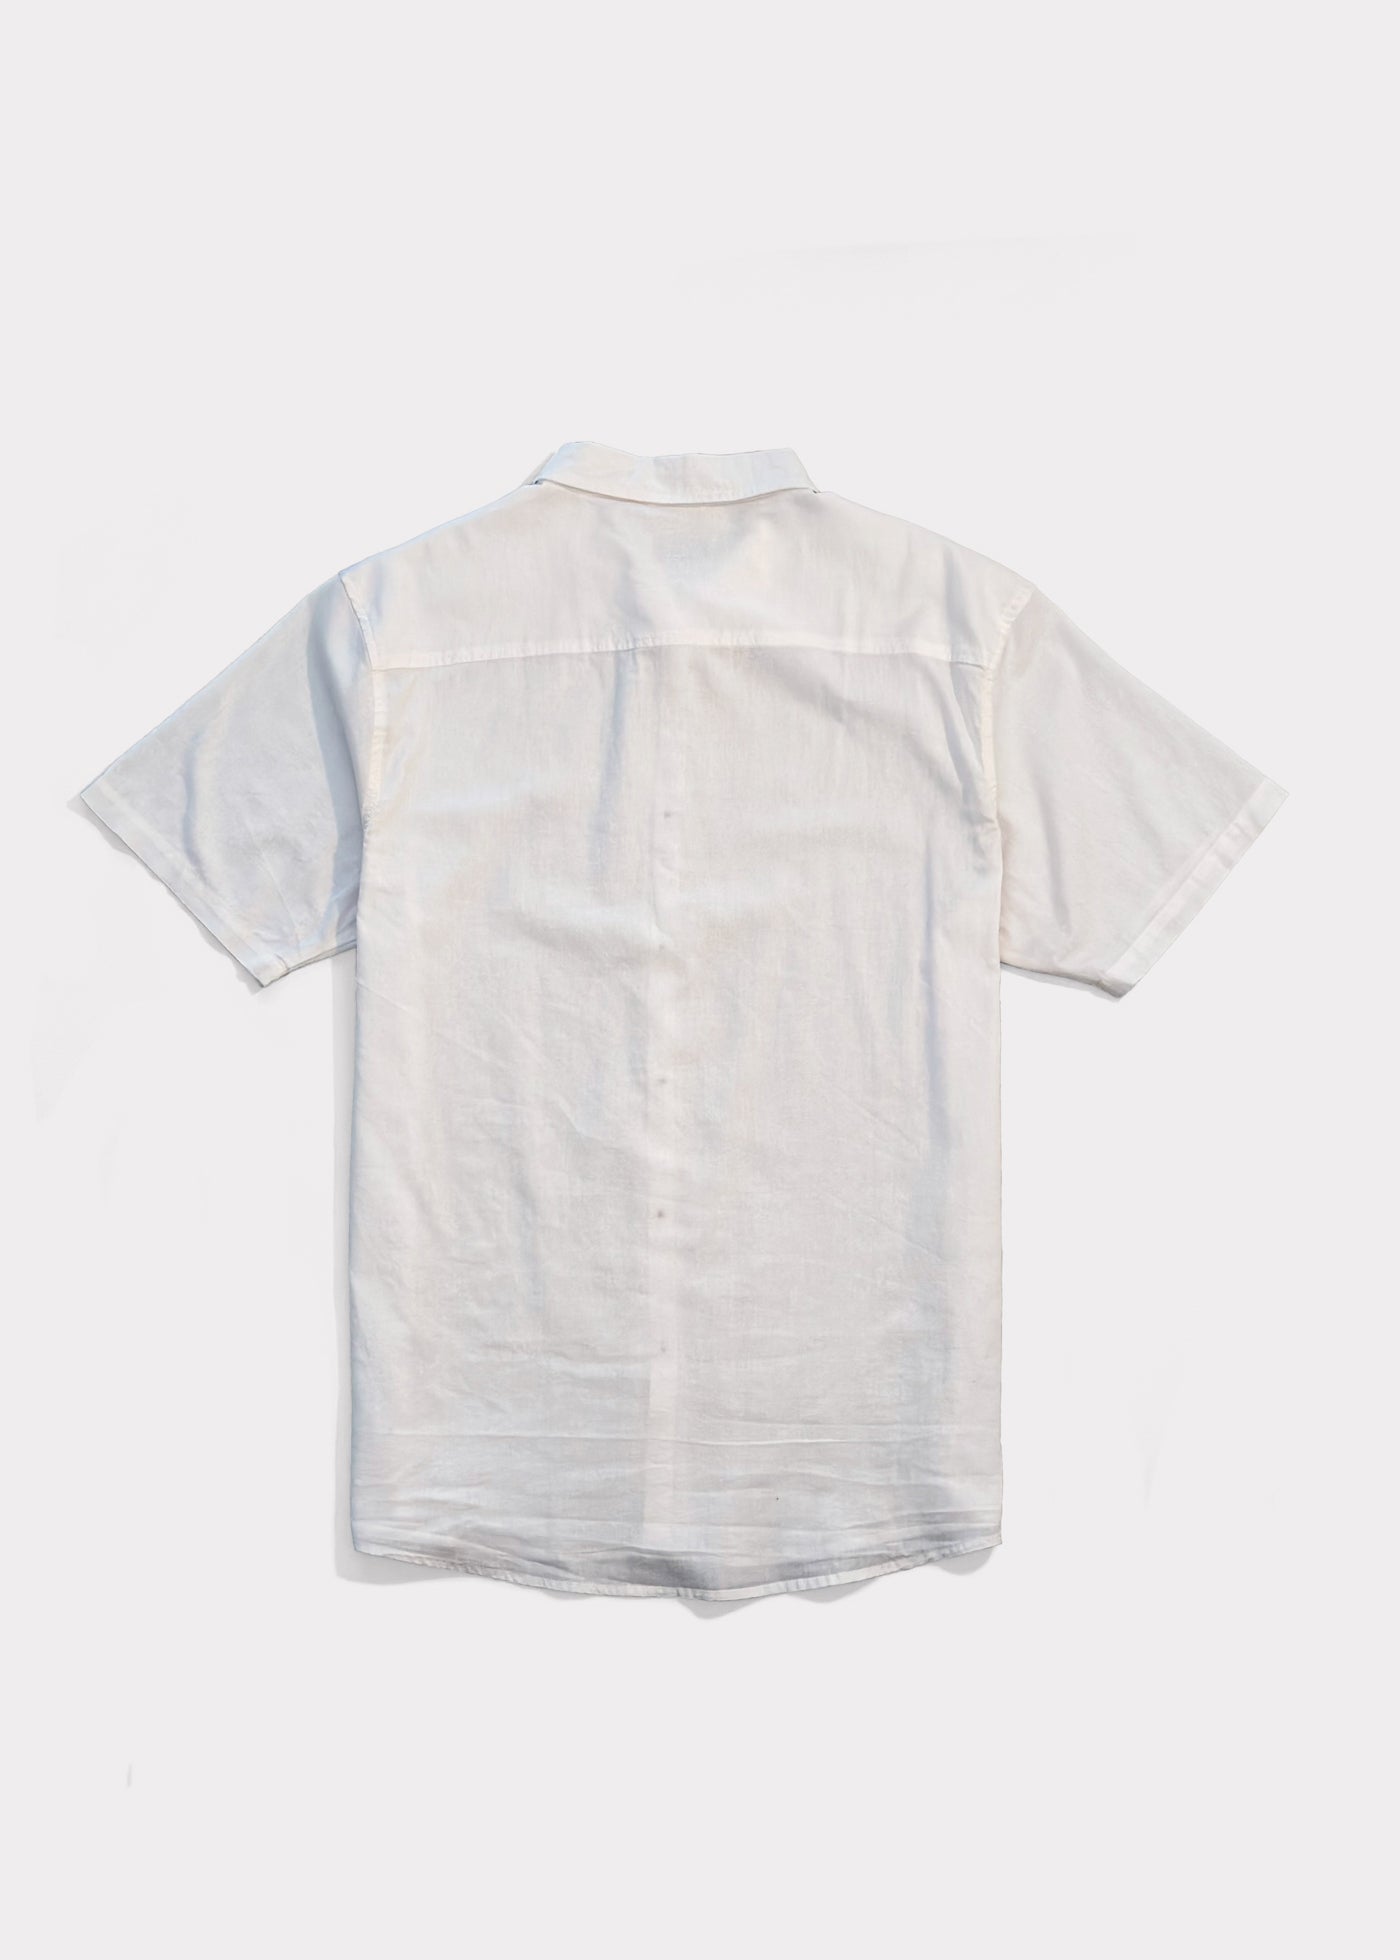 Camisa Cotton Solid Cream White